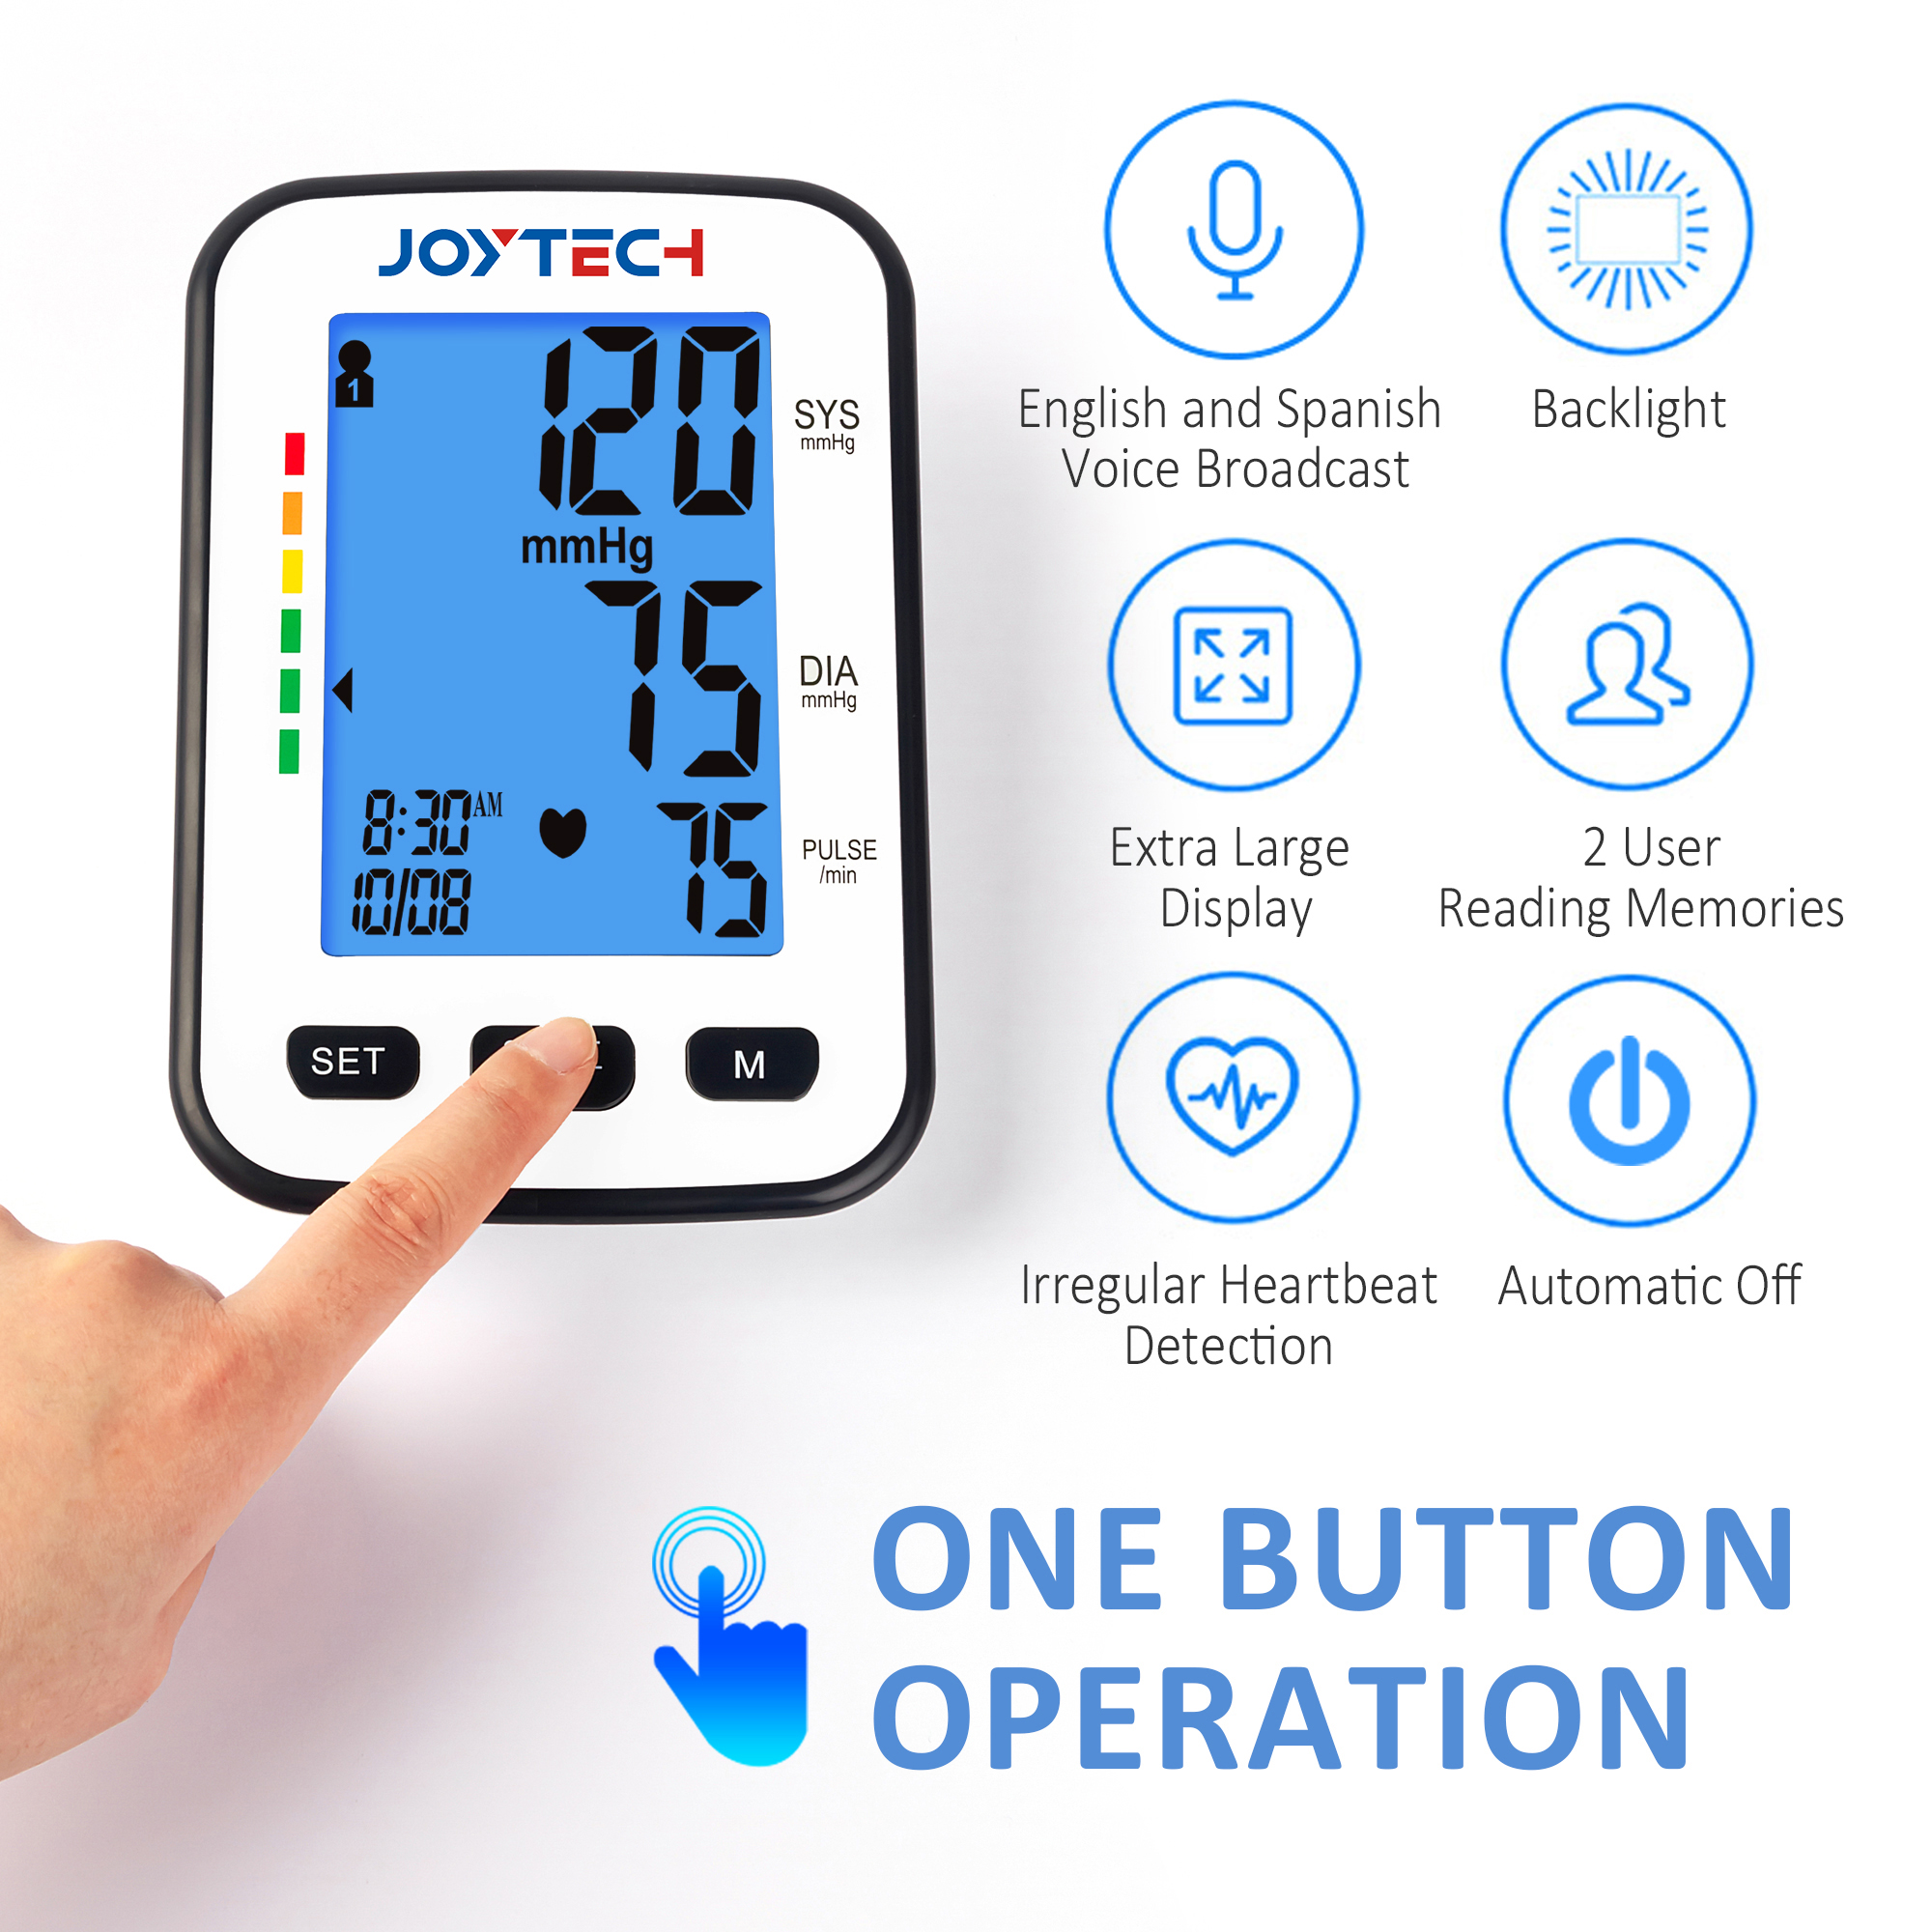 Maitiro ekuseta nguva uye zuva paJoytech DBP-1333 blood pressure monitor